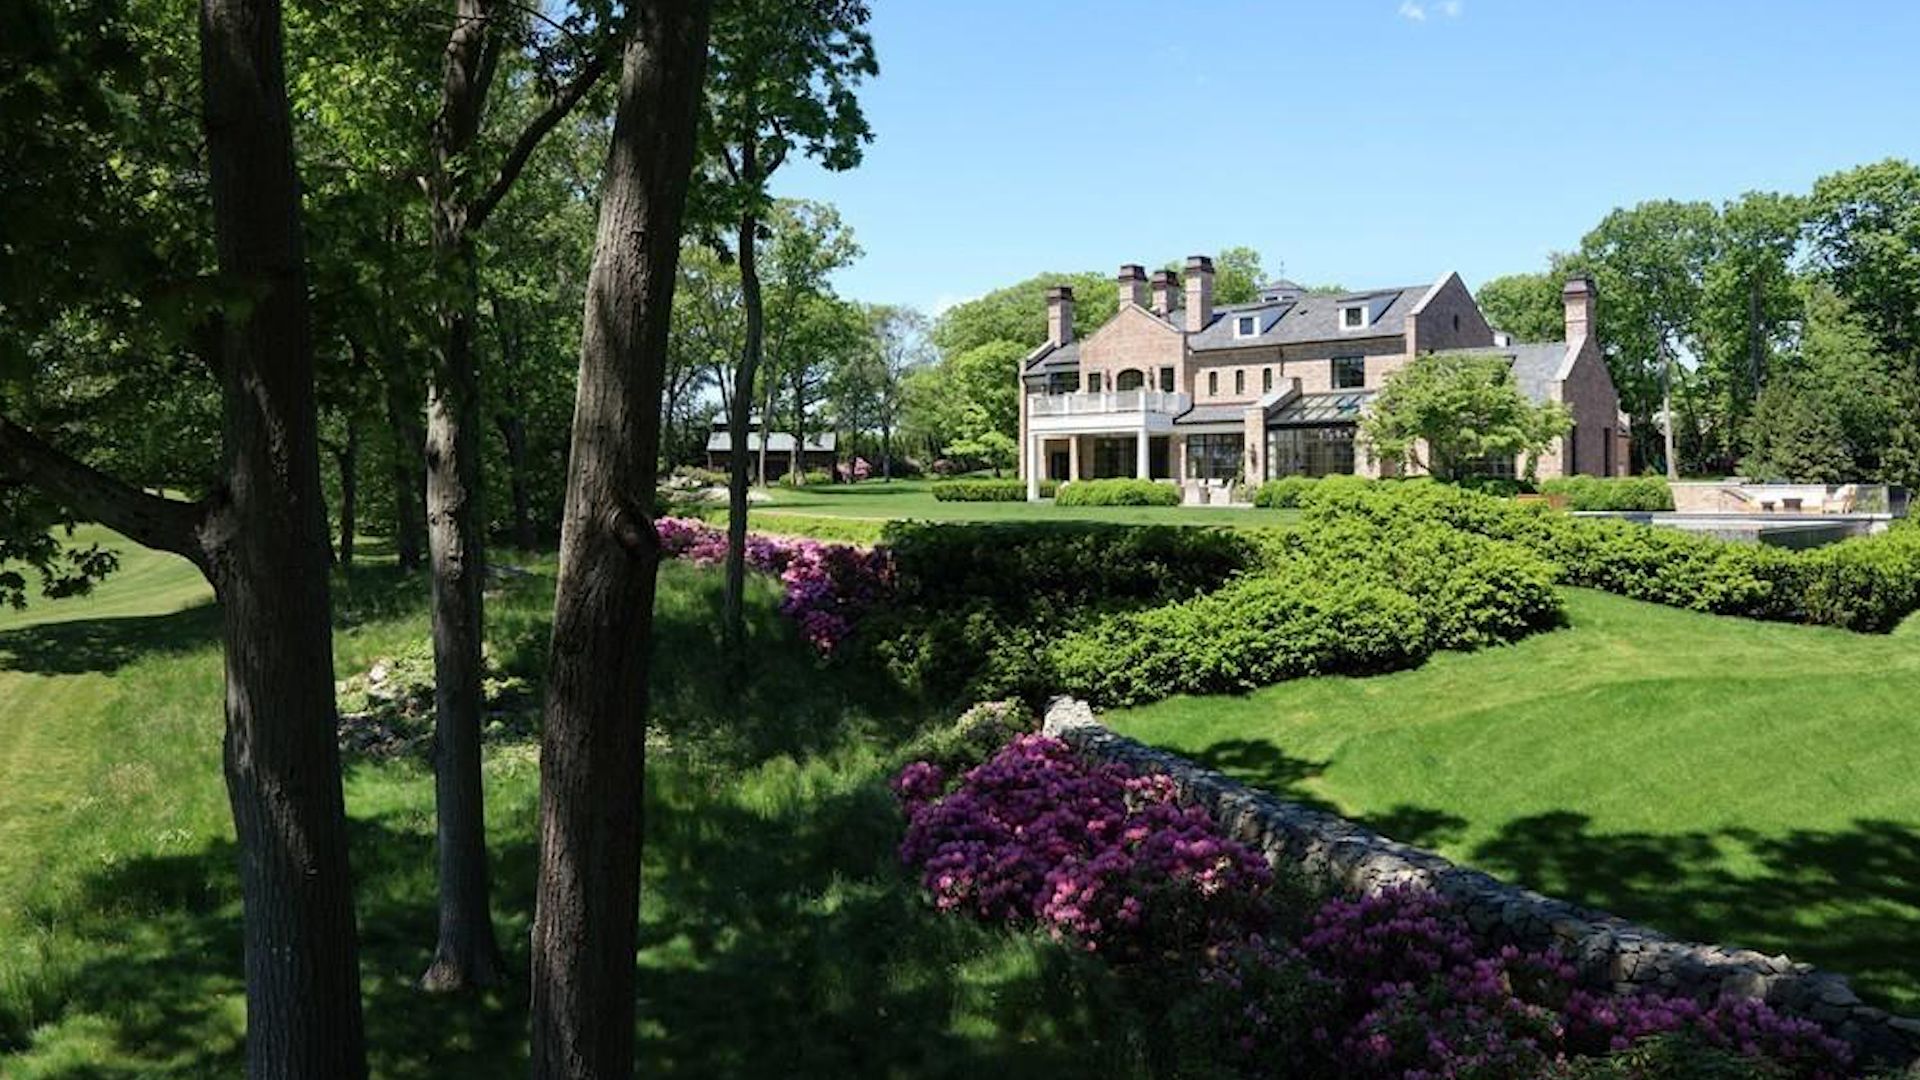 Tom Brady & Gisele Bundchen are selling this Massachusetts estate